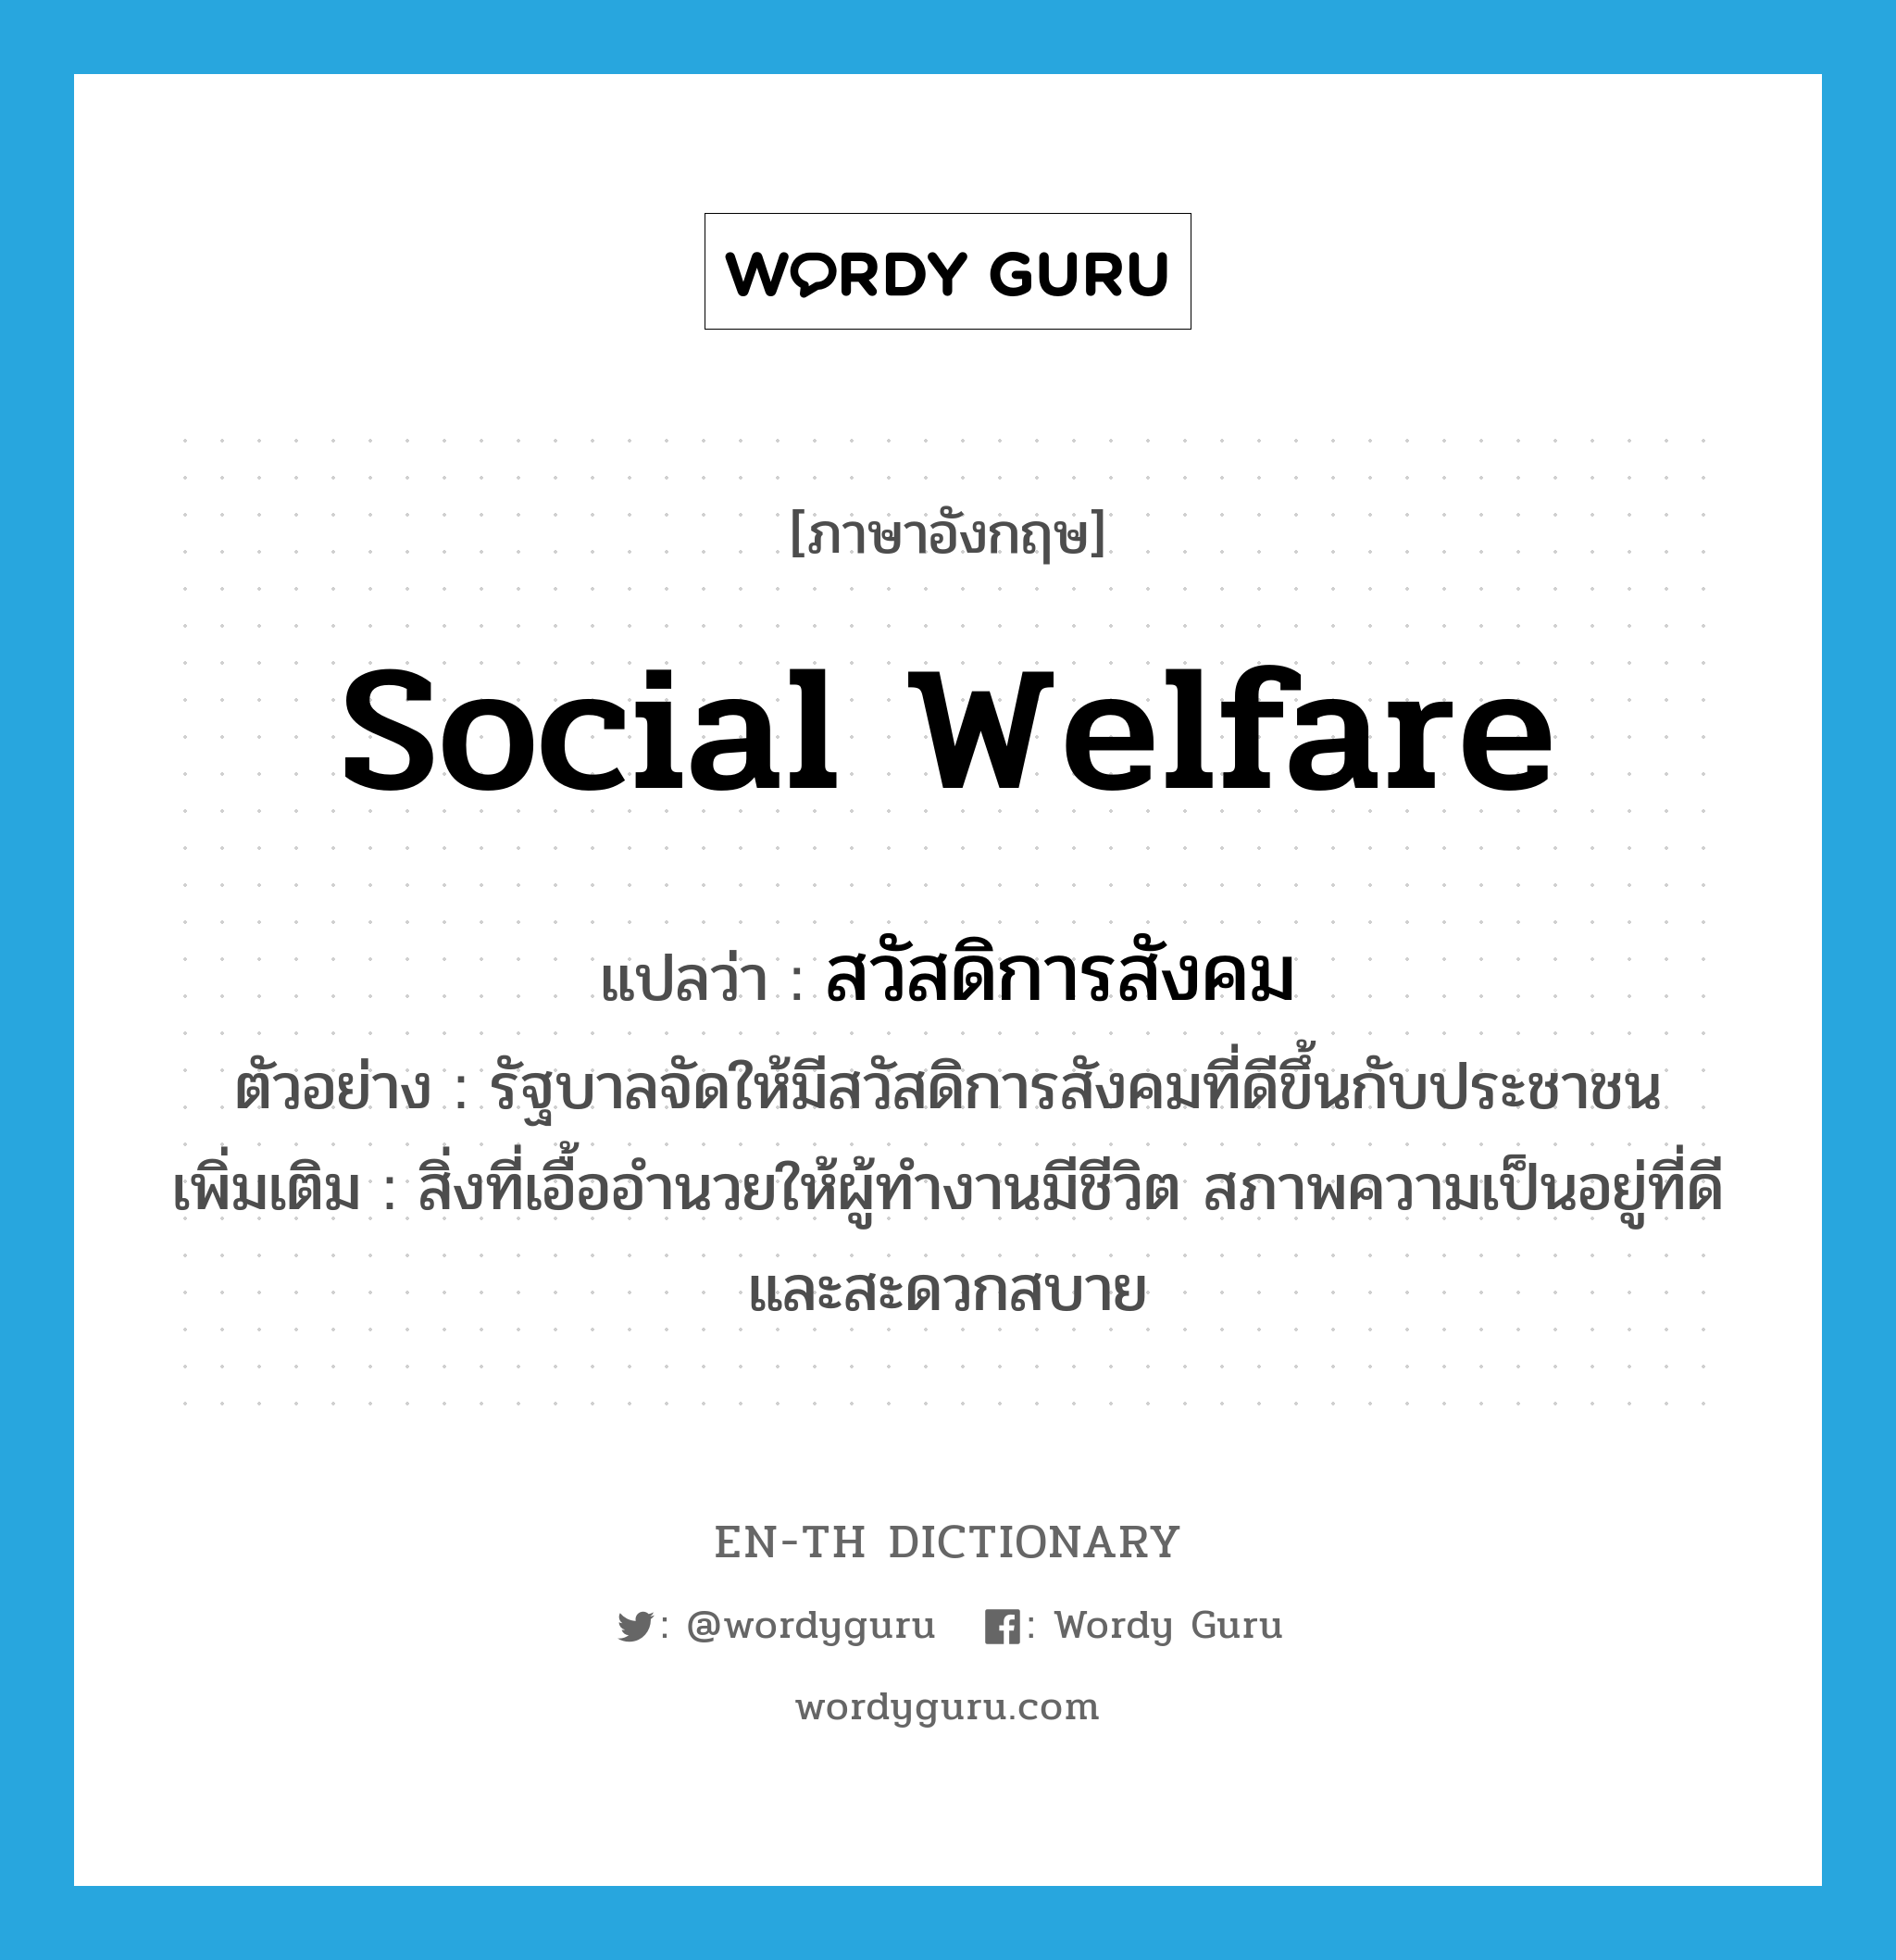 social welfare แปลว่า?, คำศัพท์ภาษาอังกฤษ social welfare แปลว่า สวัสดิการสังคม ประเภท N ตัวอย่าง รัฐบาลจัดให้มีสวัสดิการสังคมที่ดีขึ้นกับประชาชน เพิ่มเติม สิ่งที่เอื้ออำนวยให้ผู้ทำงานมีชีวิต สภาพความเป็นอยู่ที่ดีและสะดวกสบาย หมวด N